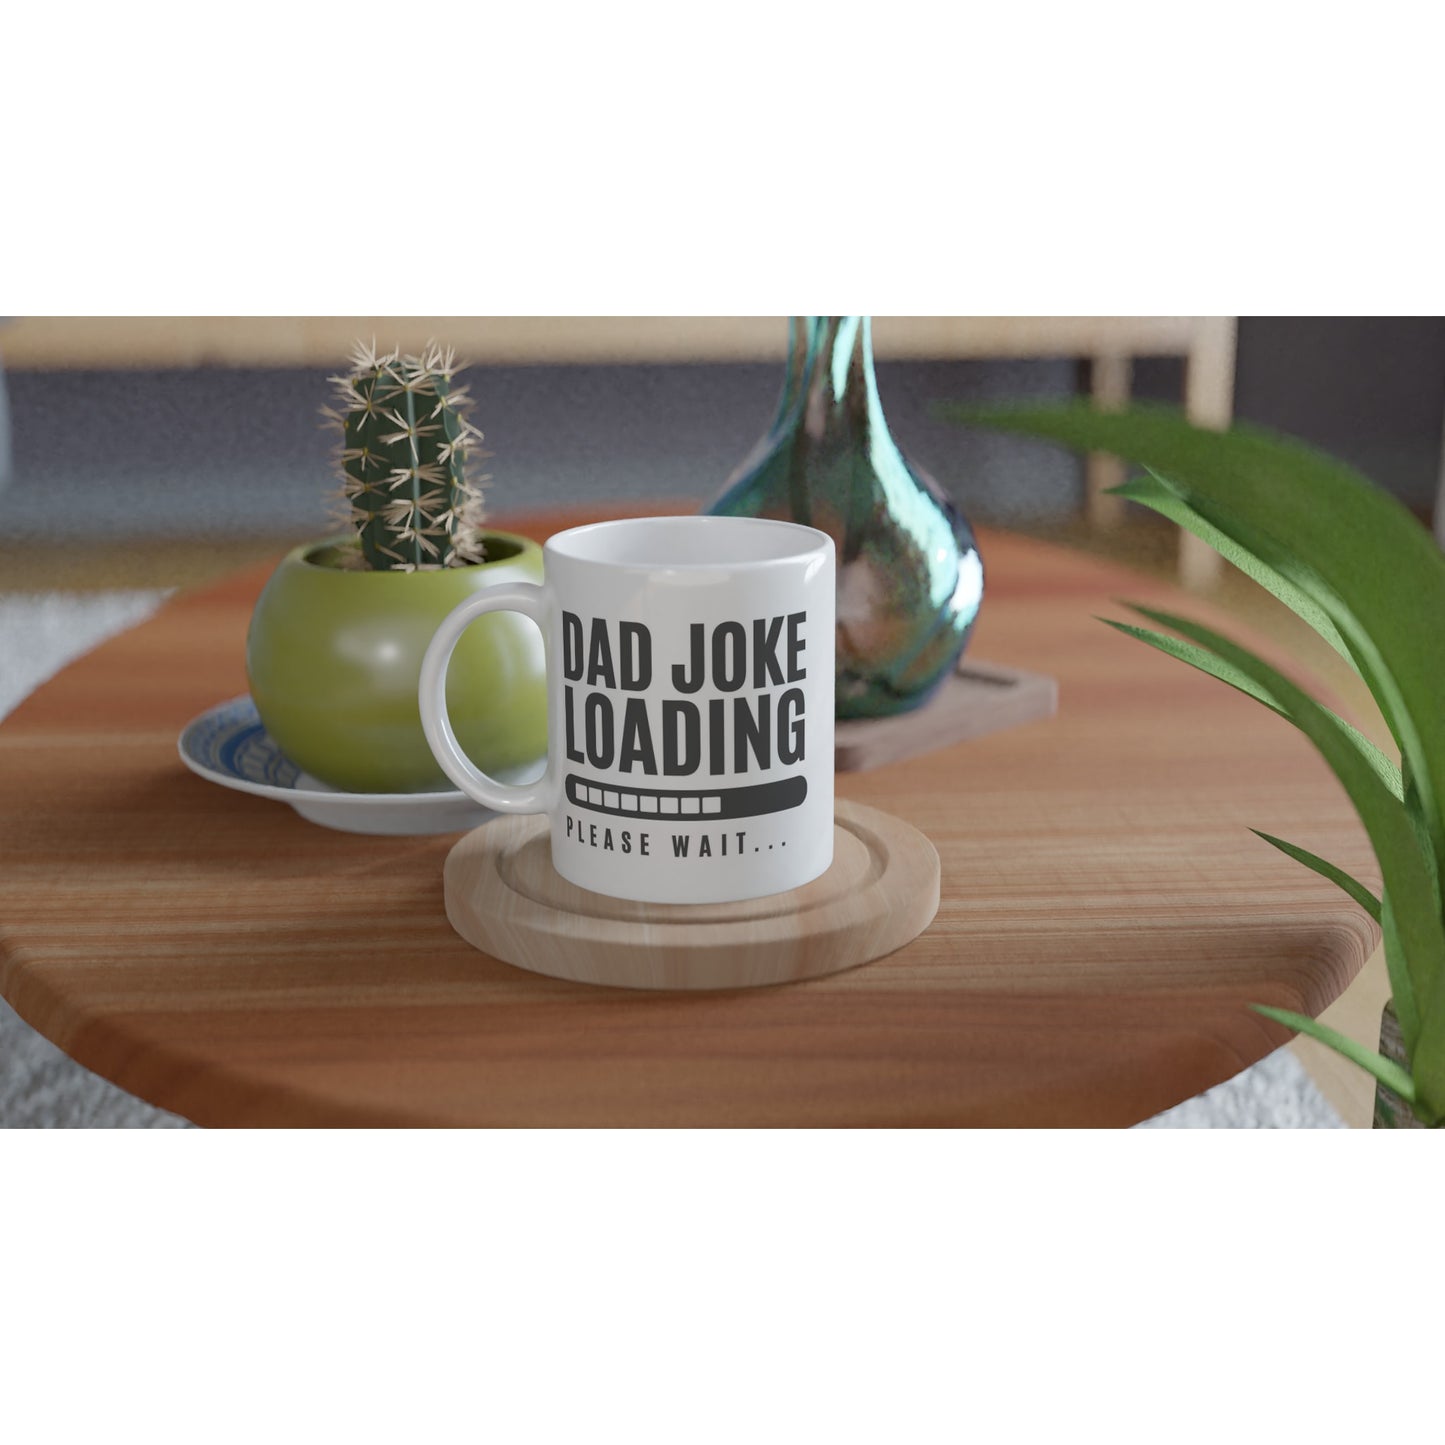 Dad Joke Loading - White 11oz Ceramic Mug White 11oz Mug Dad